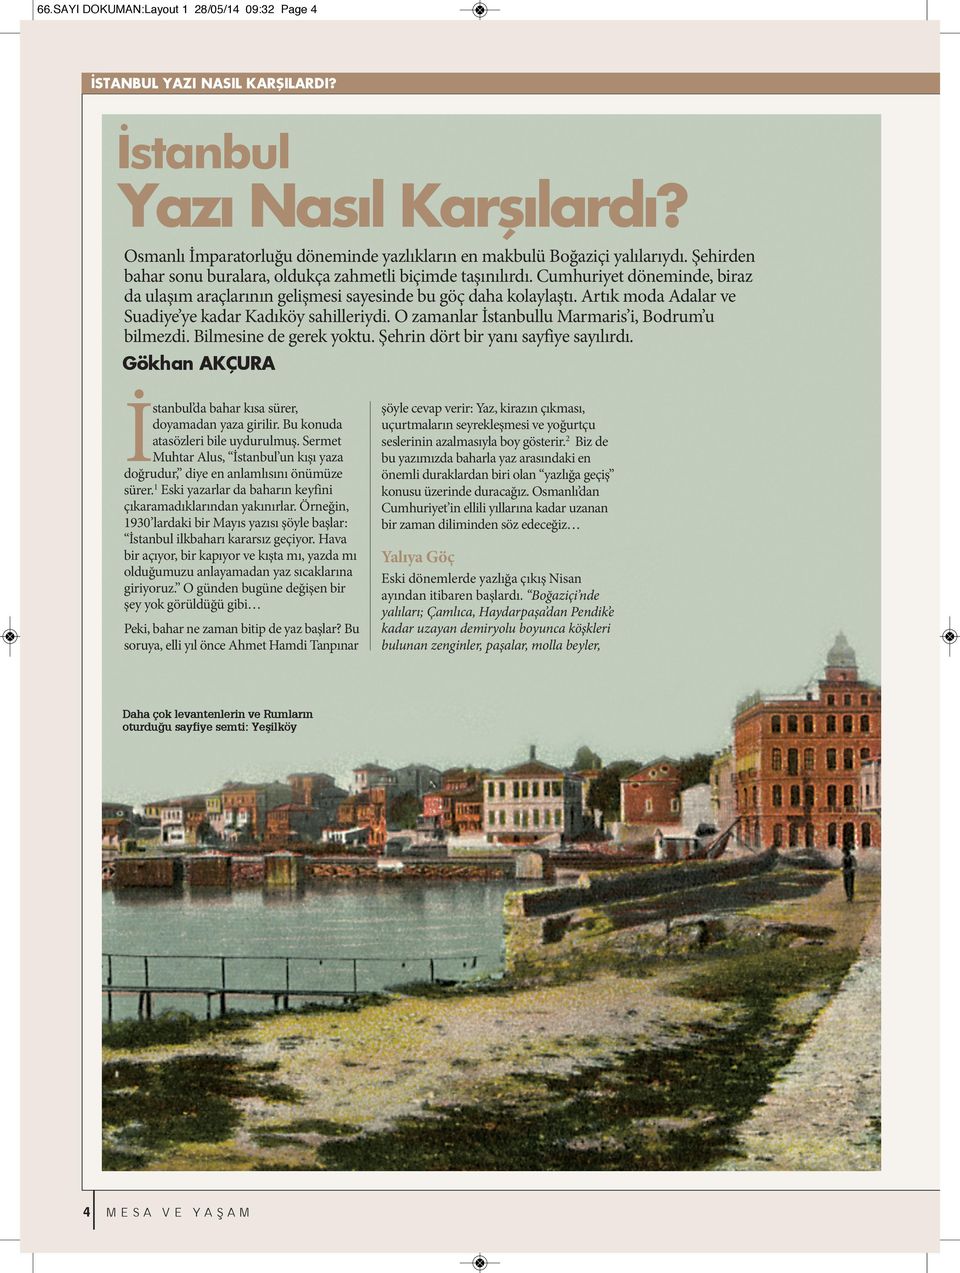 Artık moda Adalar ve Suadiye ye kadar Kadıköy sahilleriydi. O zamanlar İstanbullu Marmaris i, Bodrum u bilmezdi. Bilmesine de gerek yoktu. Şehrin dört bir yanı sayfiye sayılırdı.